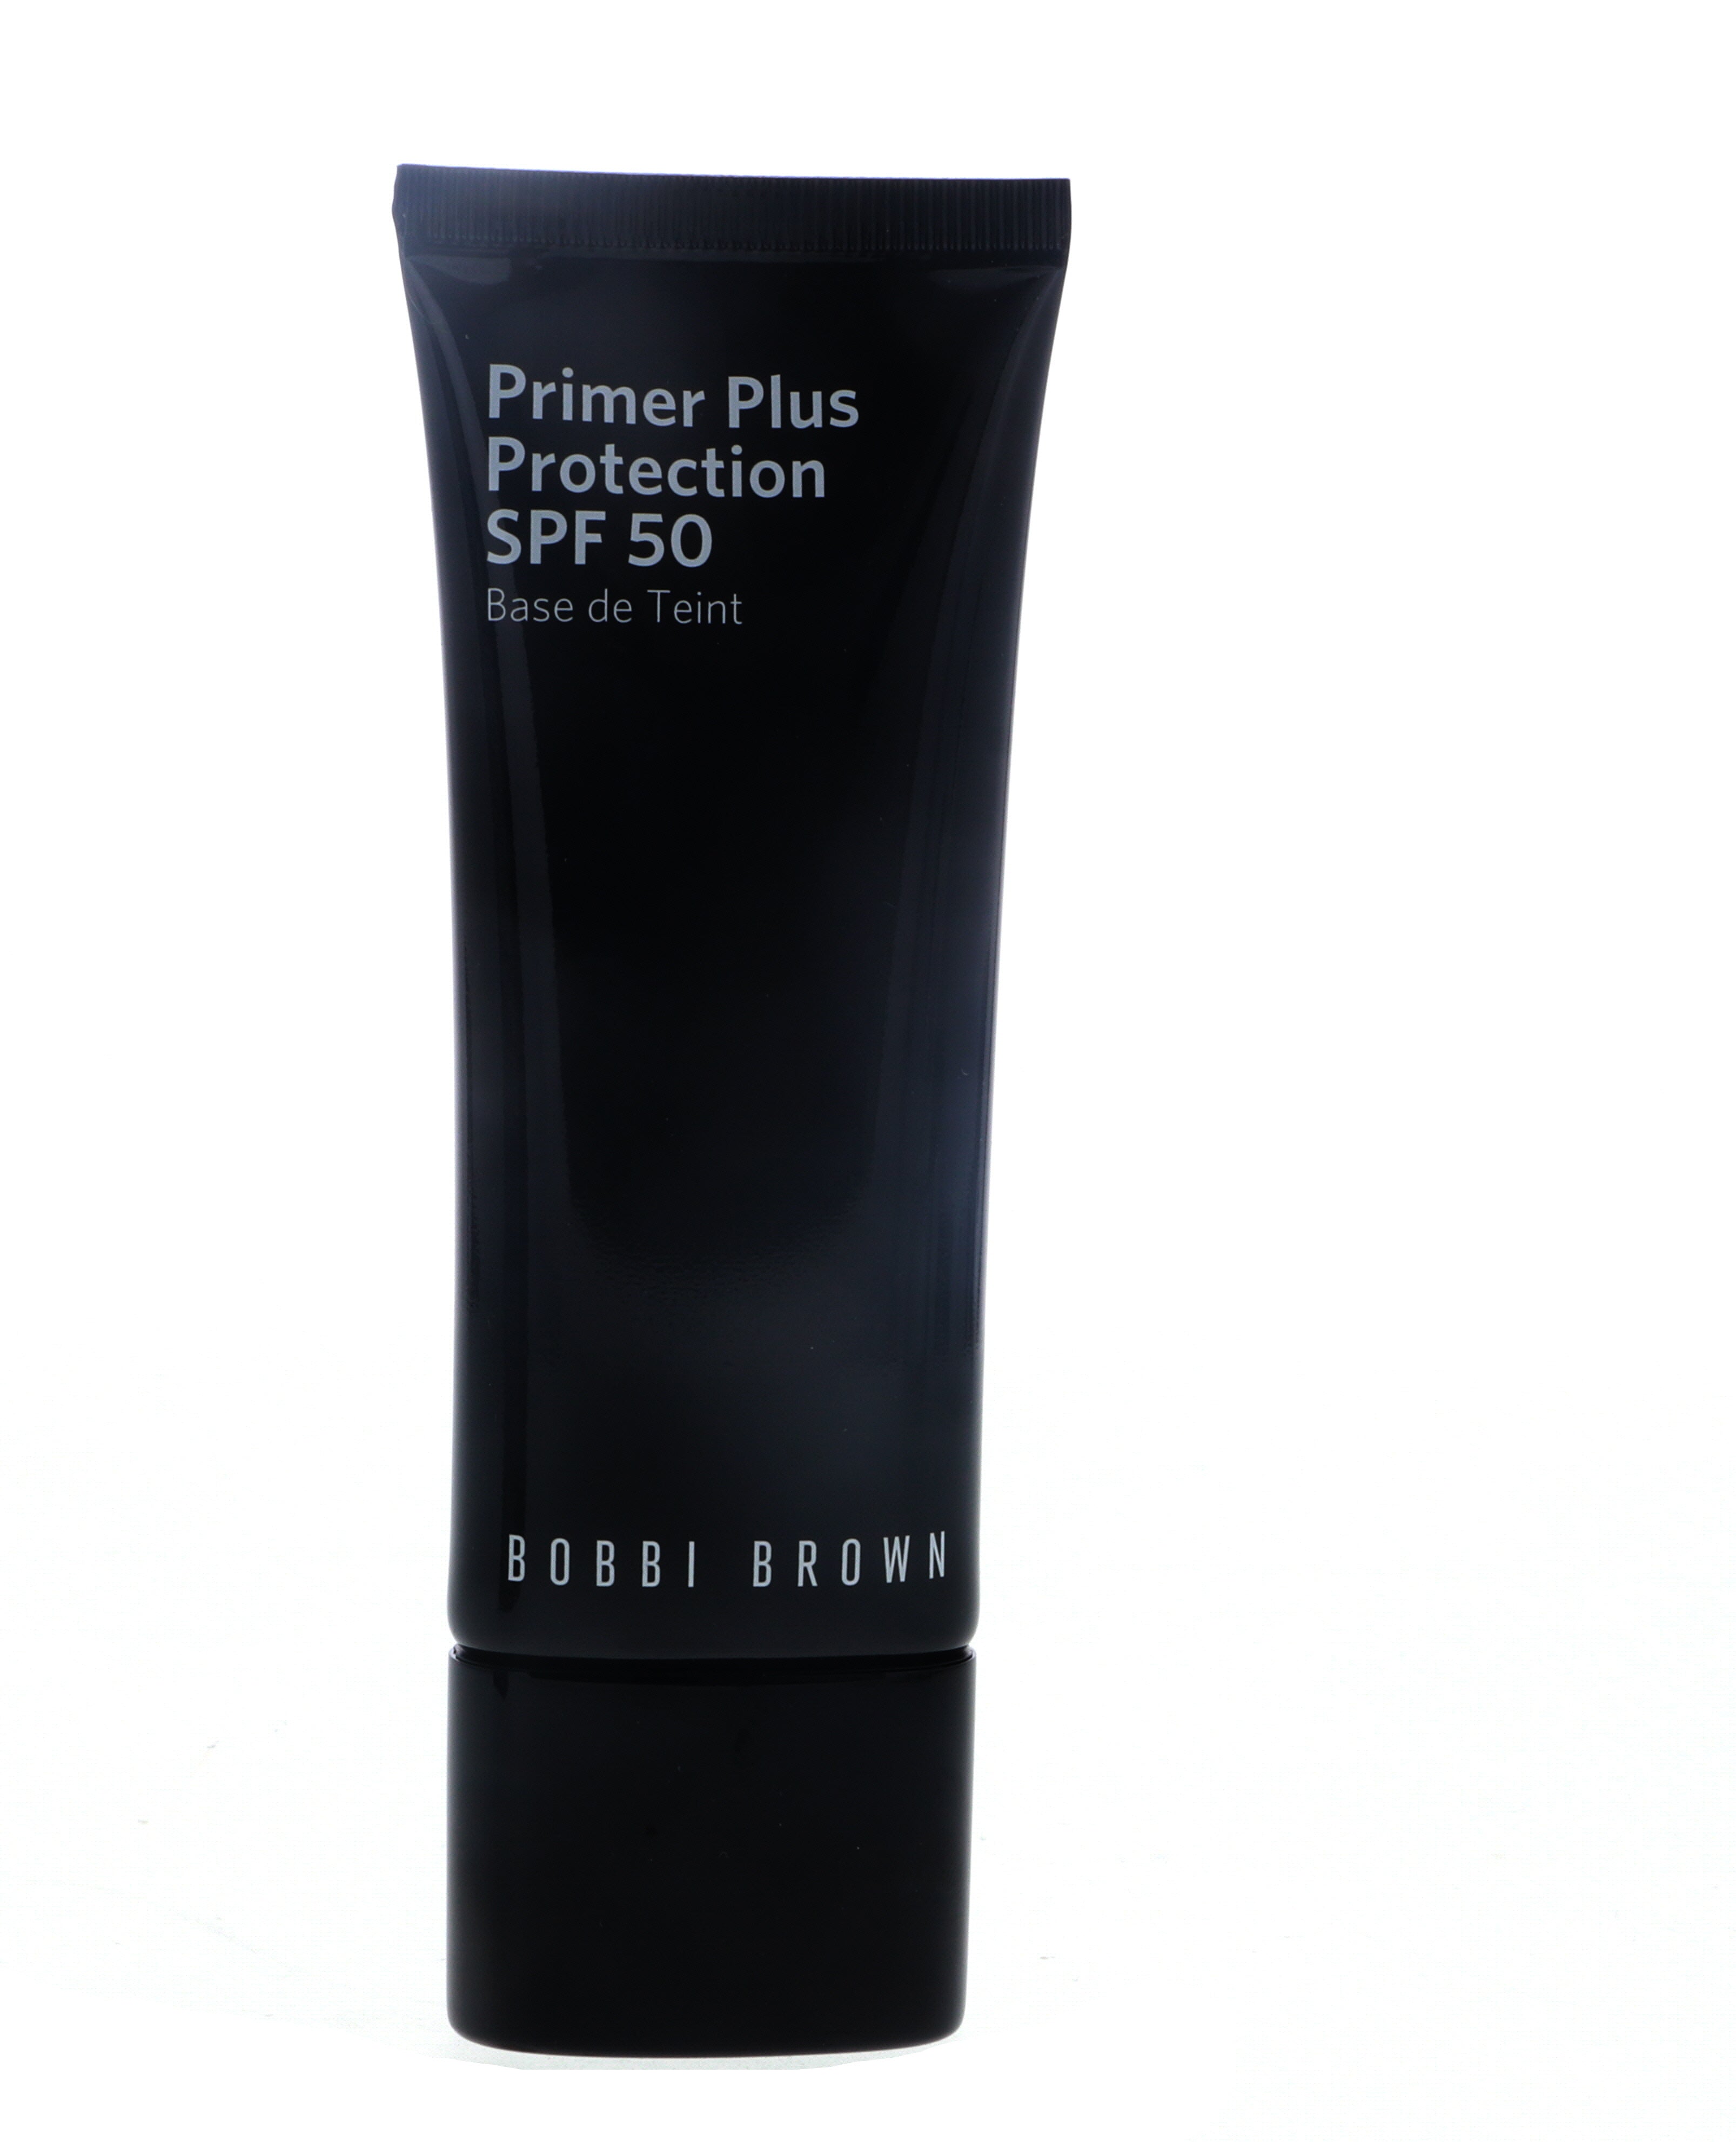 Bobbi Brown Primer Plus Protection SPF50, 1.4 oz